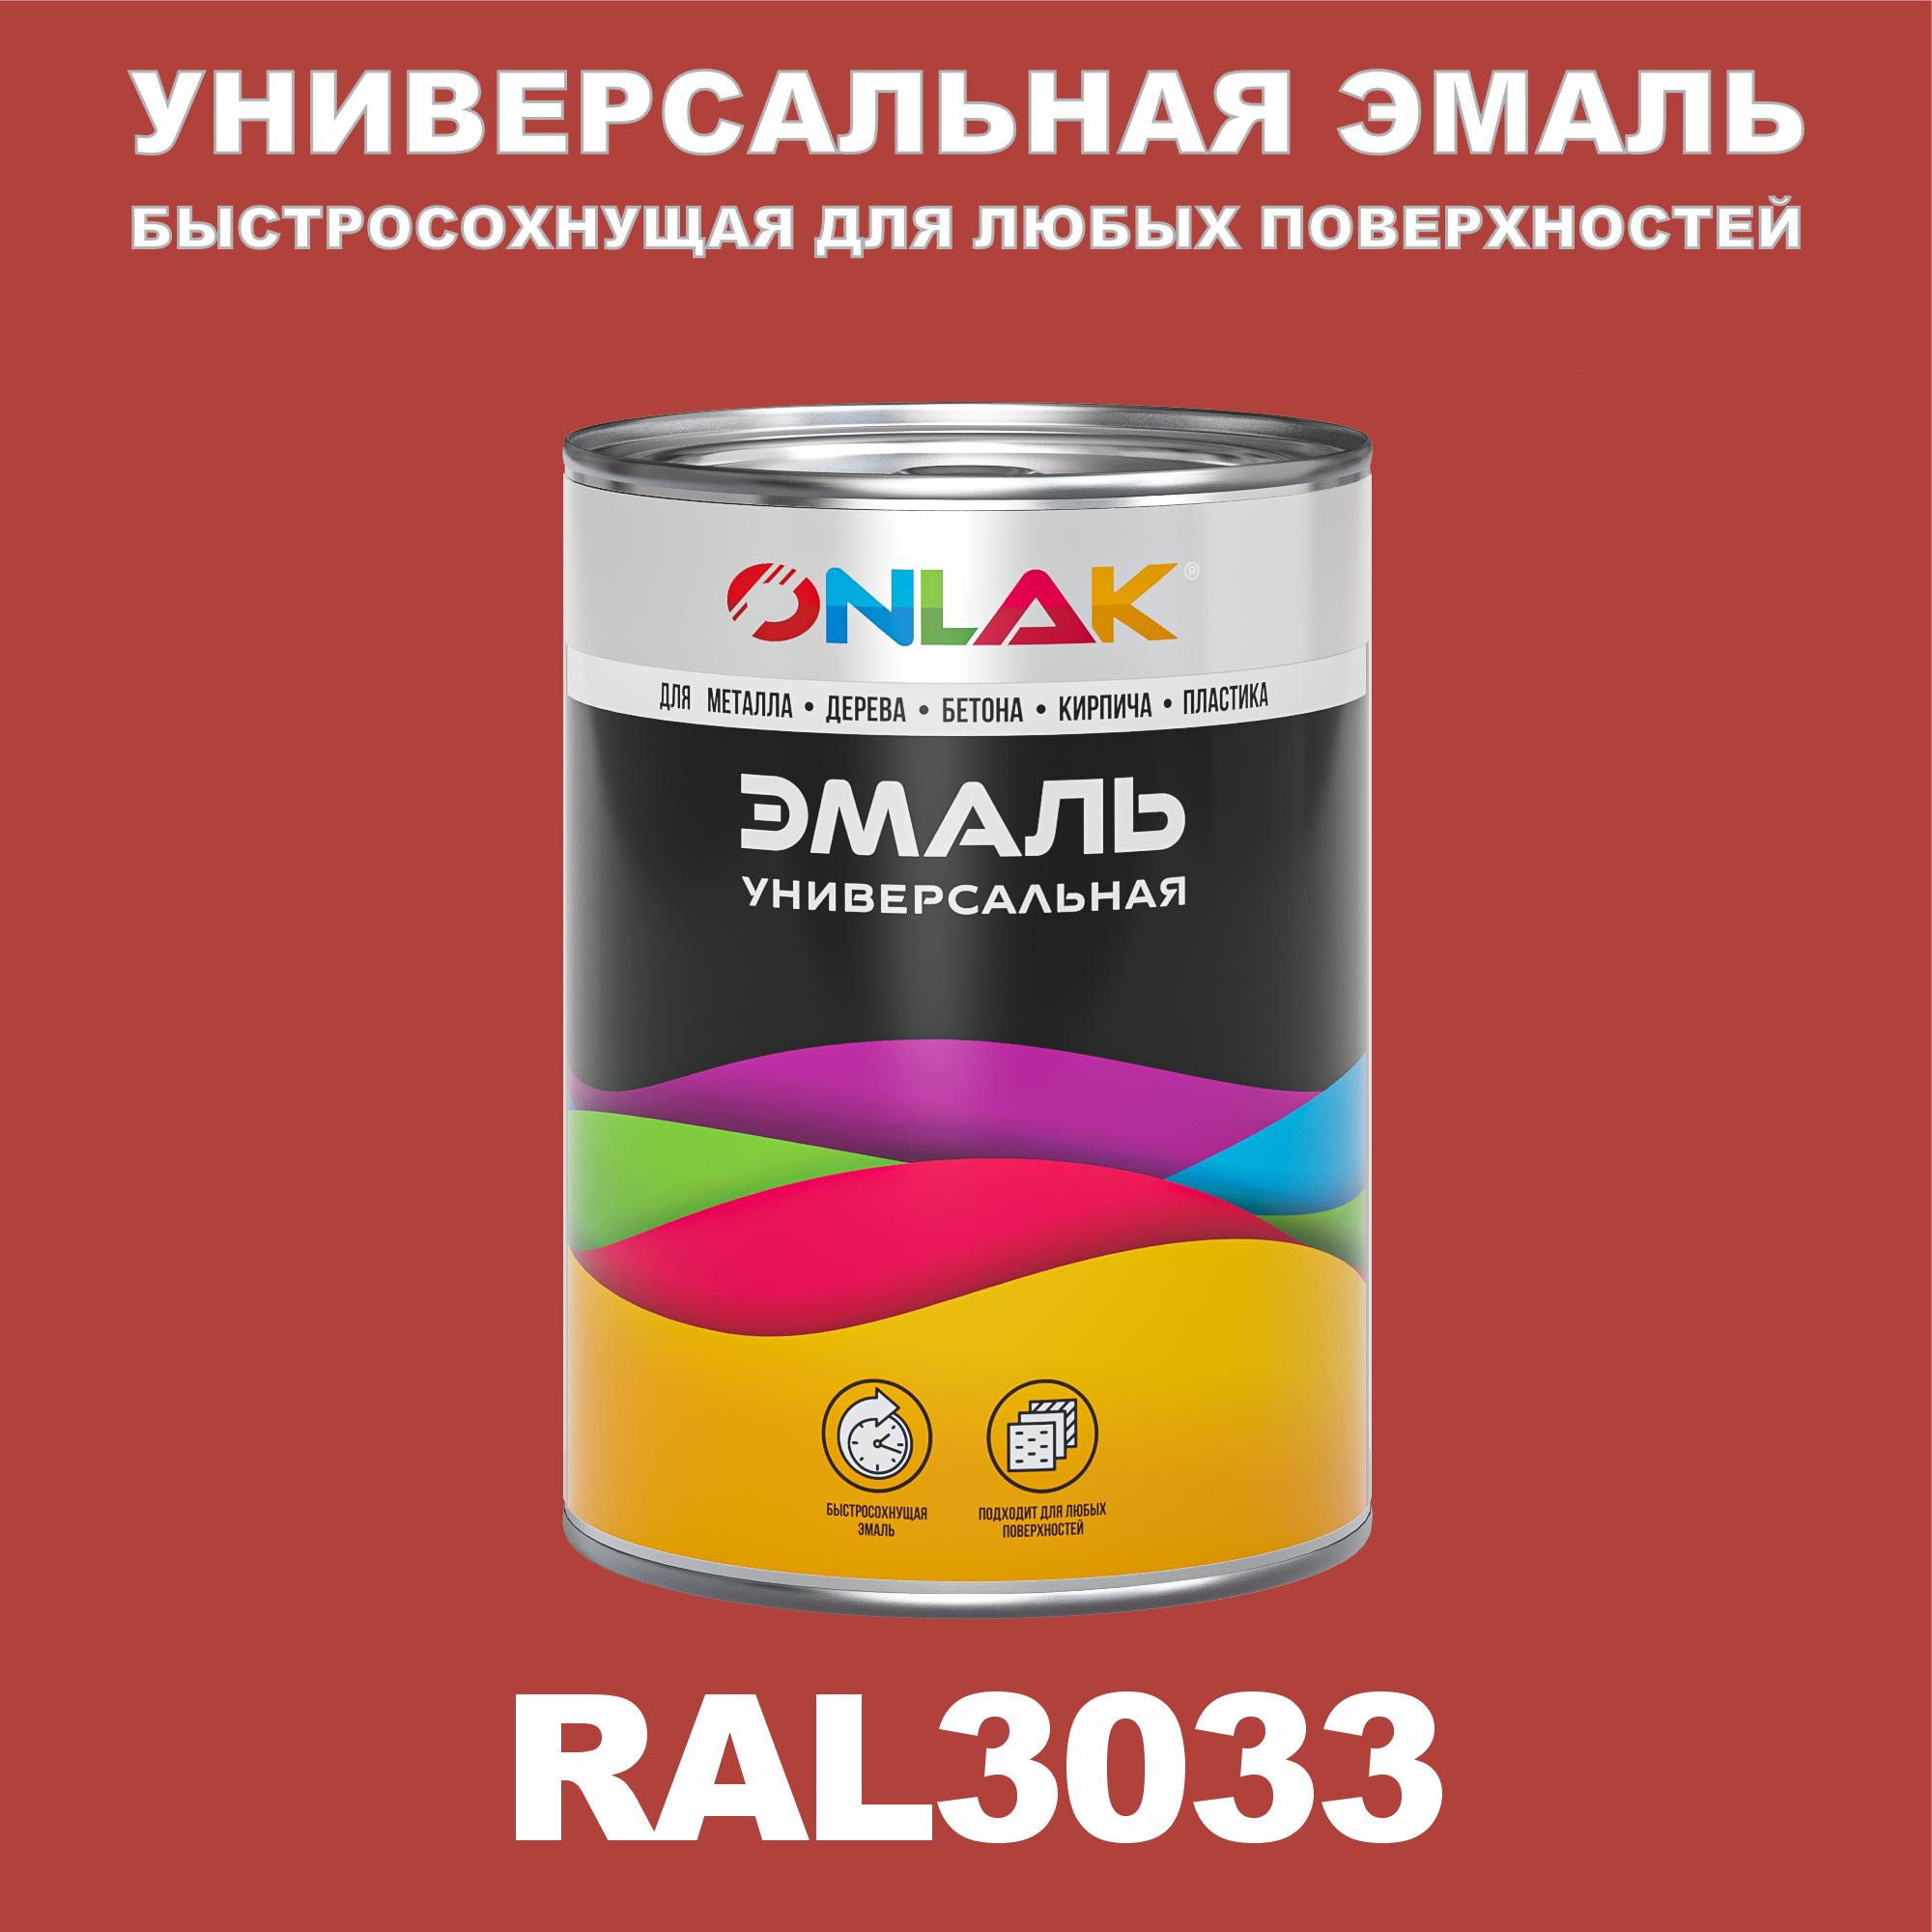 Эмаль ONLAK Универсальная RAL3033 по металлу по ржавчине для дерева бетона пластика напиток сокосодержащий santal красный сицилийский апельсин 1 литр